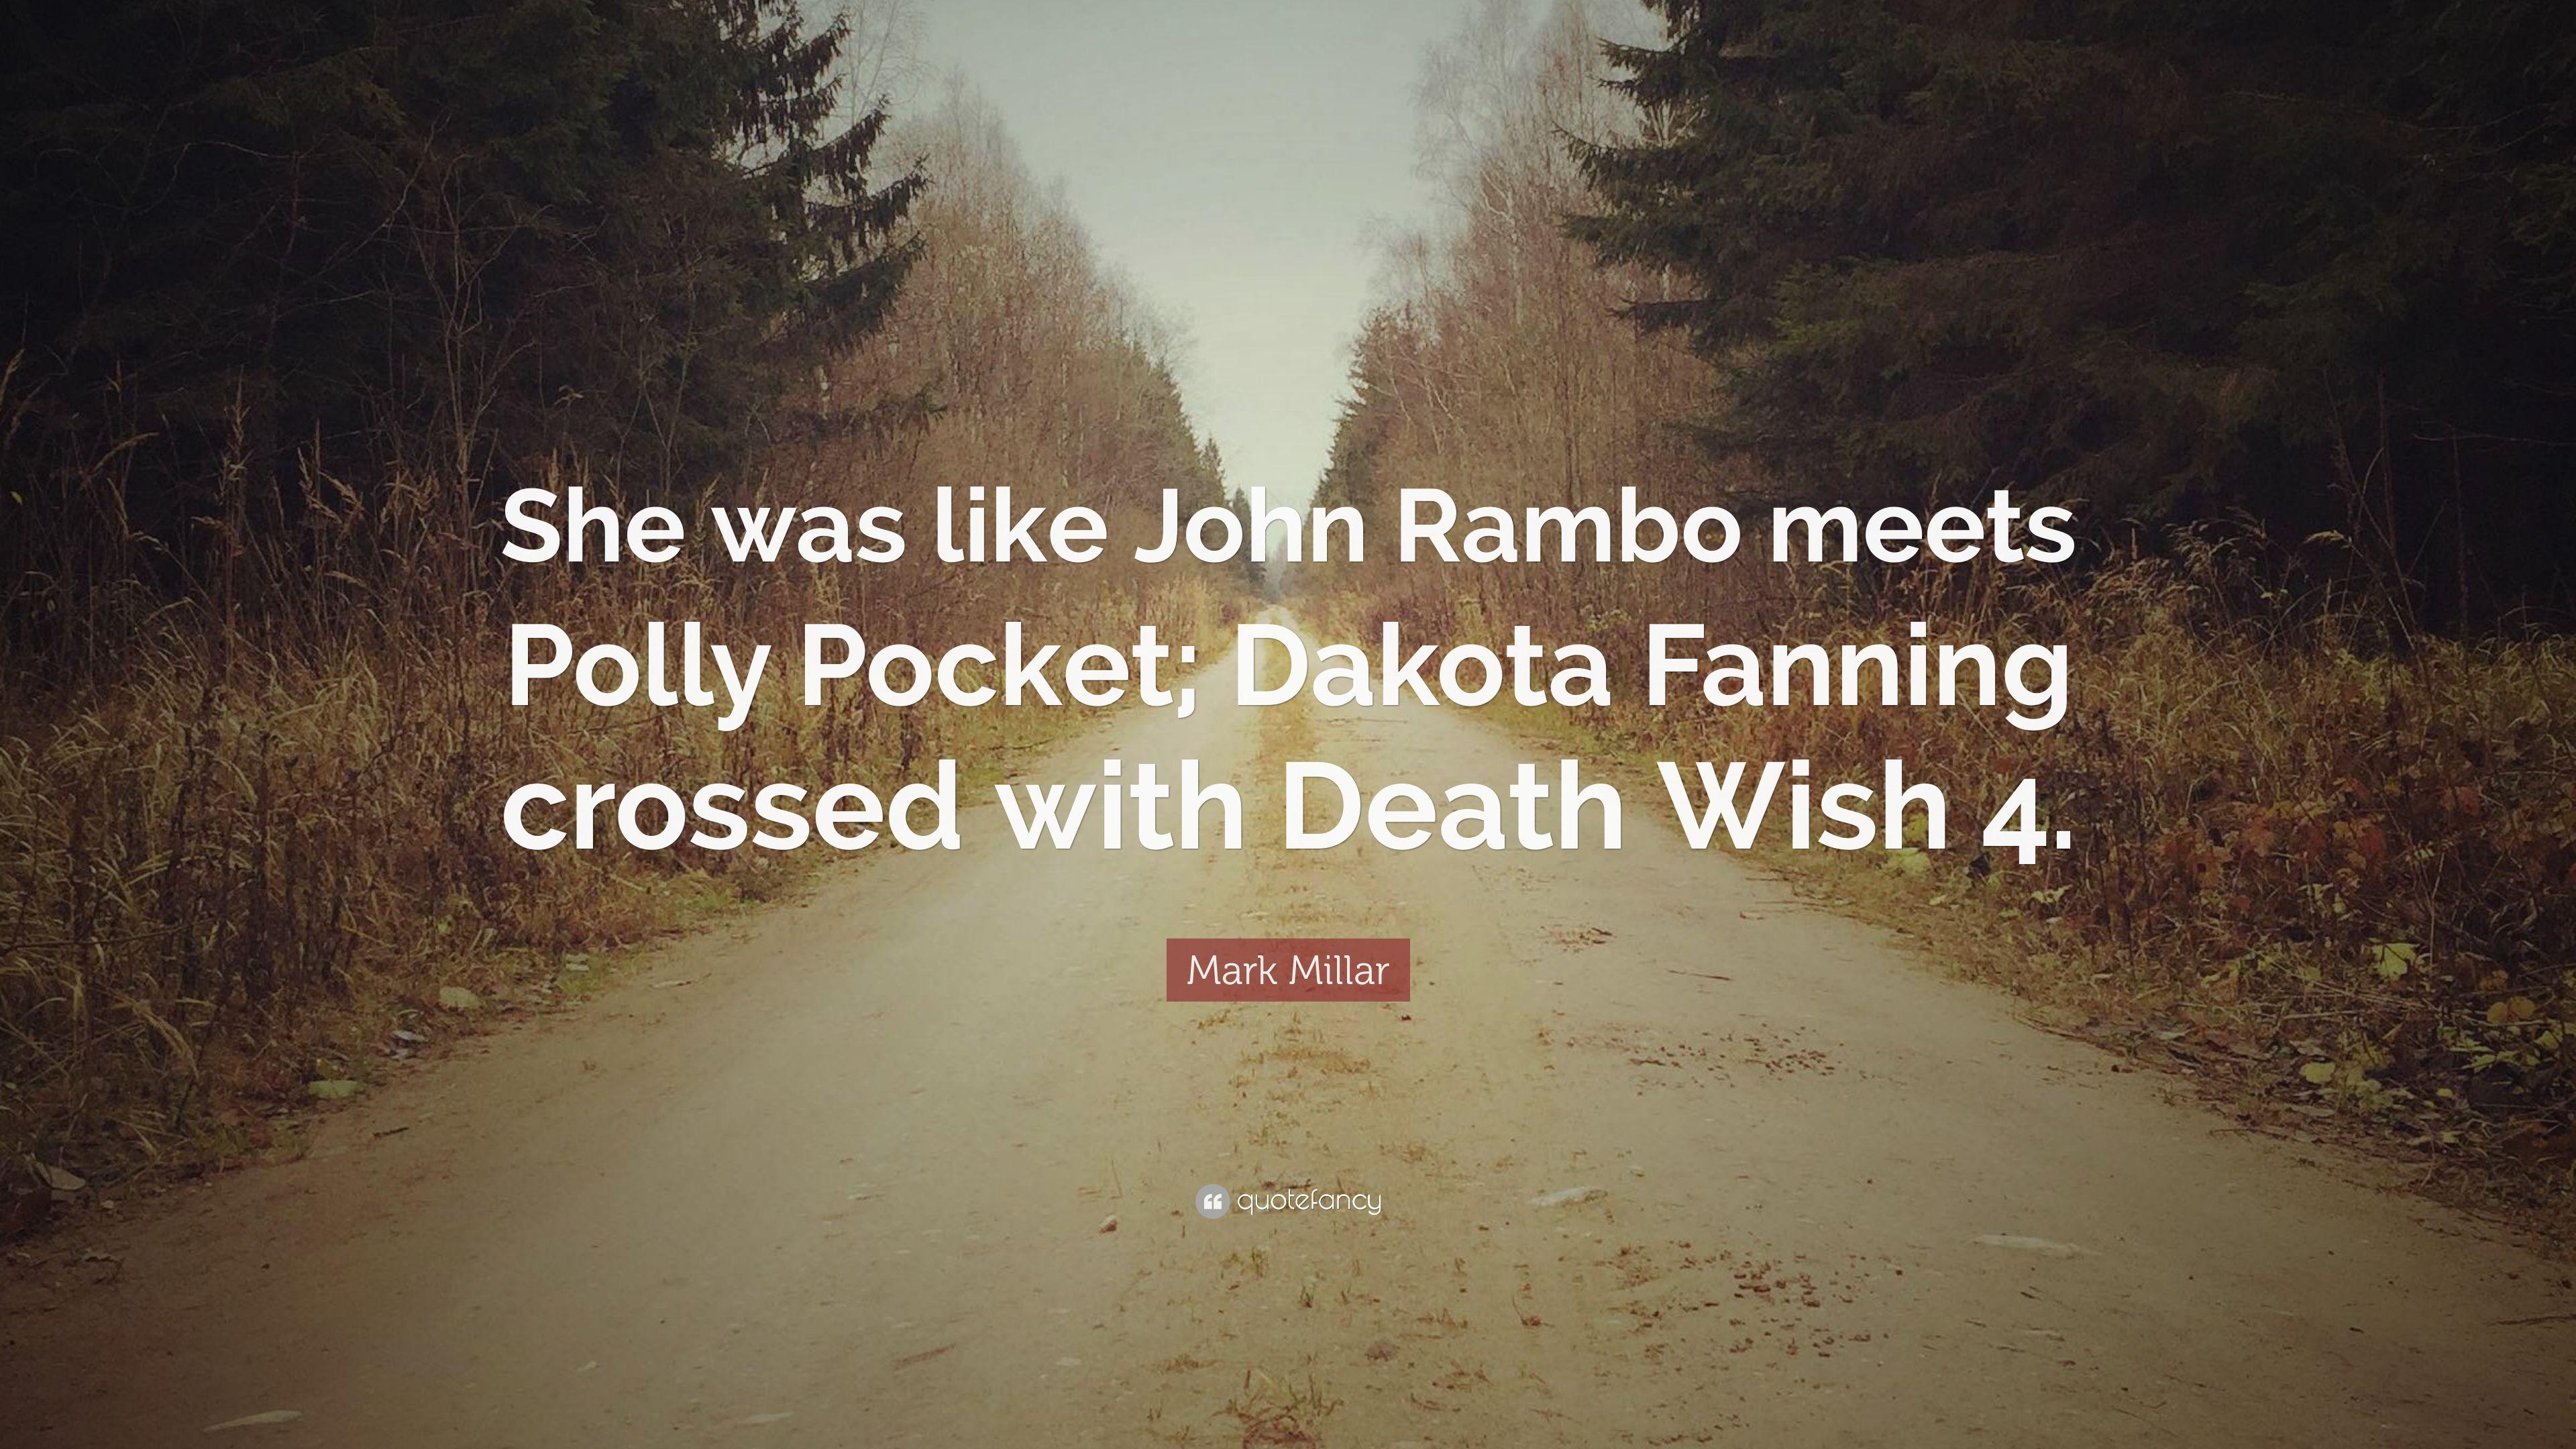 Mark Millar Quote: “She was like John Rambo meets Polly Pocket